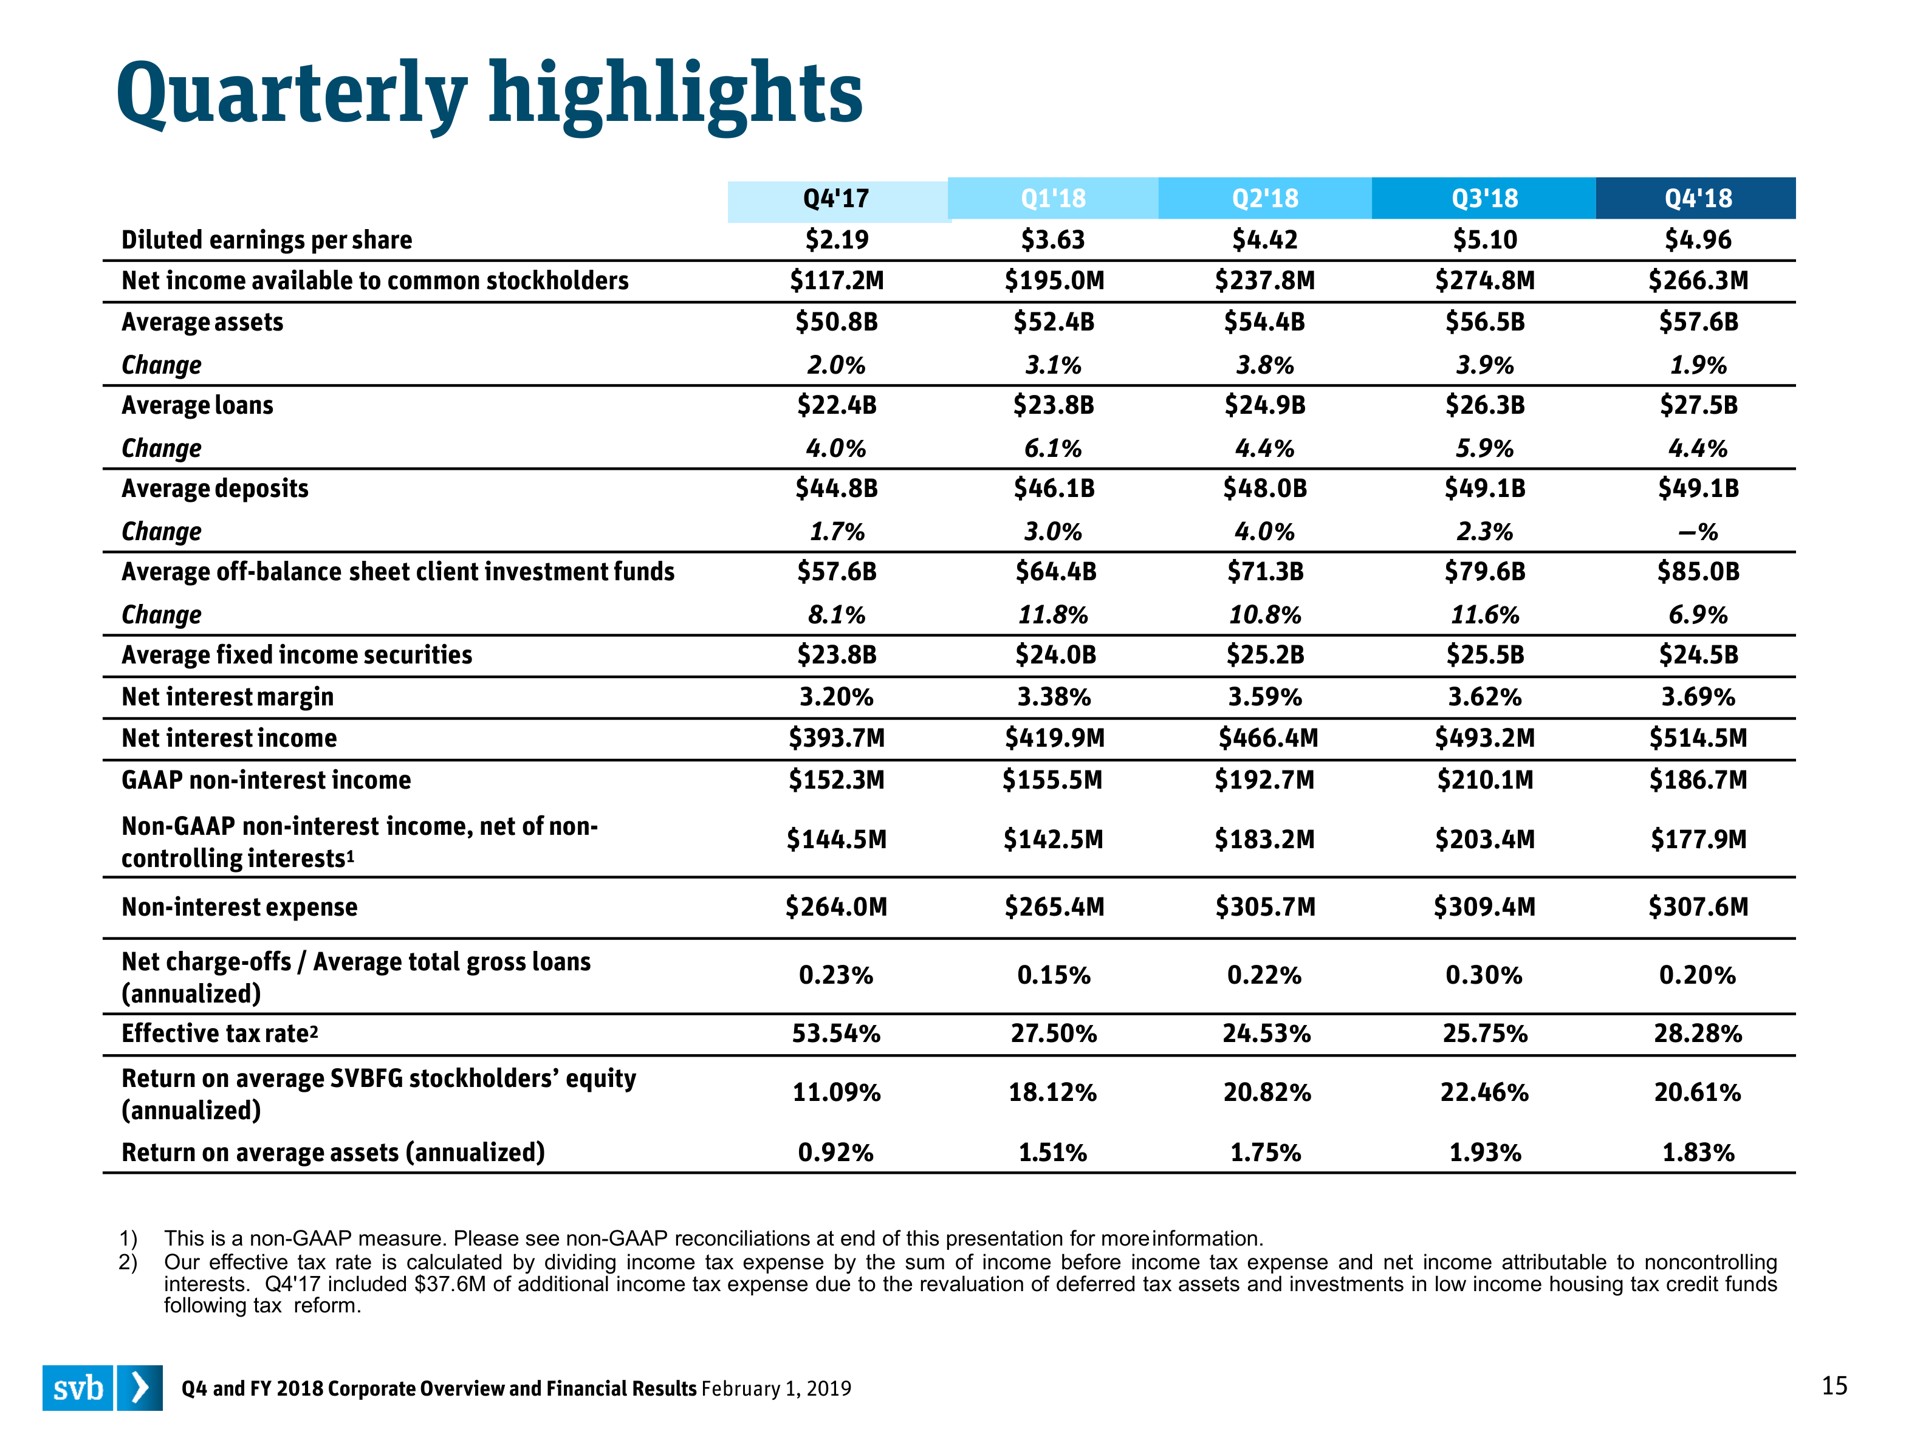 quarterly highlights awa | Silicon Valley Bank